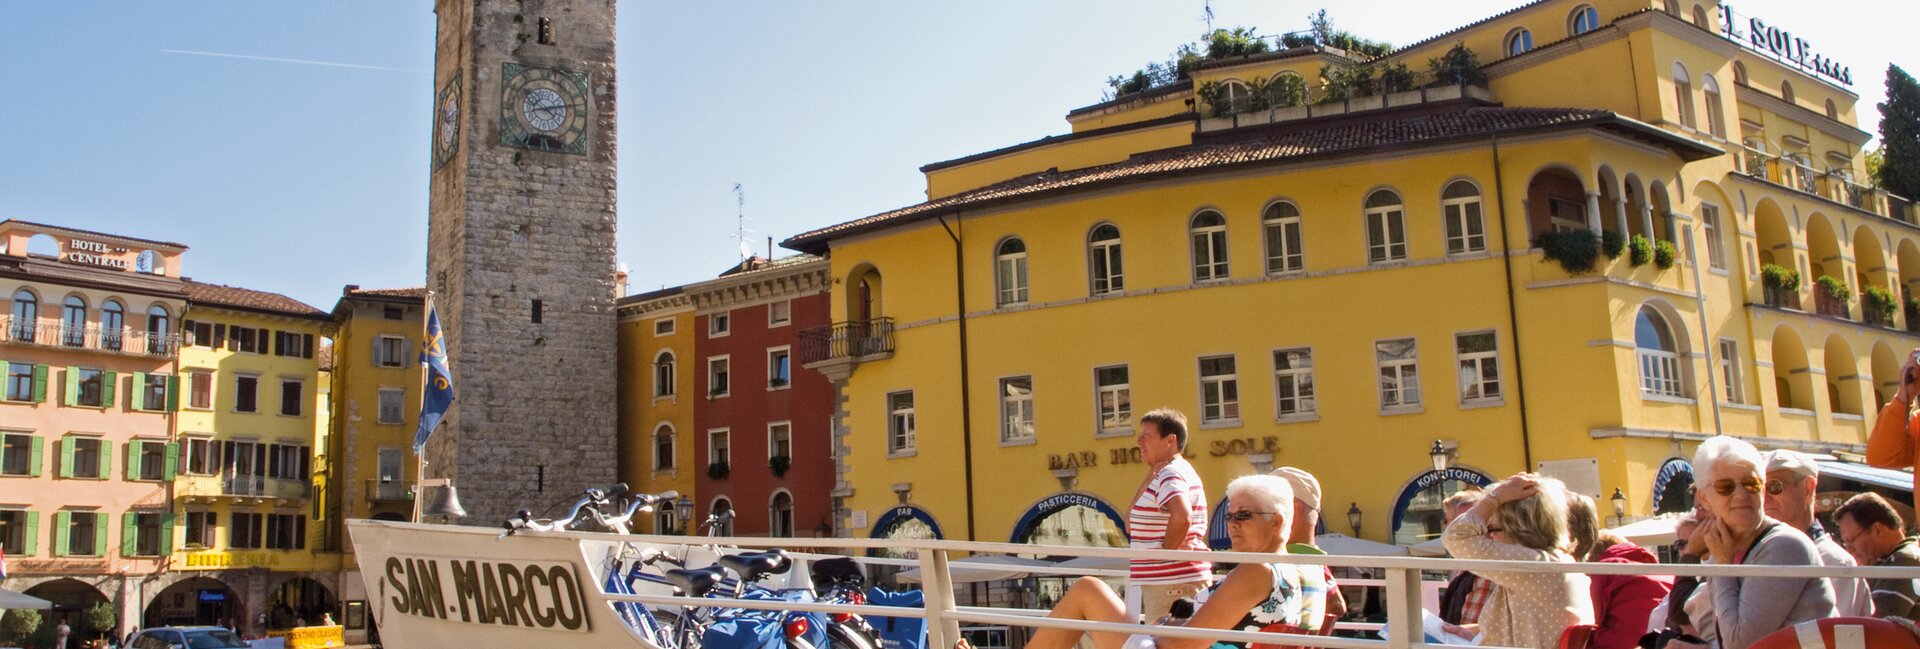 Best towns in lake Garda, Riva del Garda